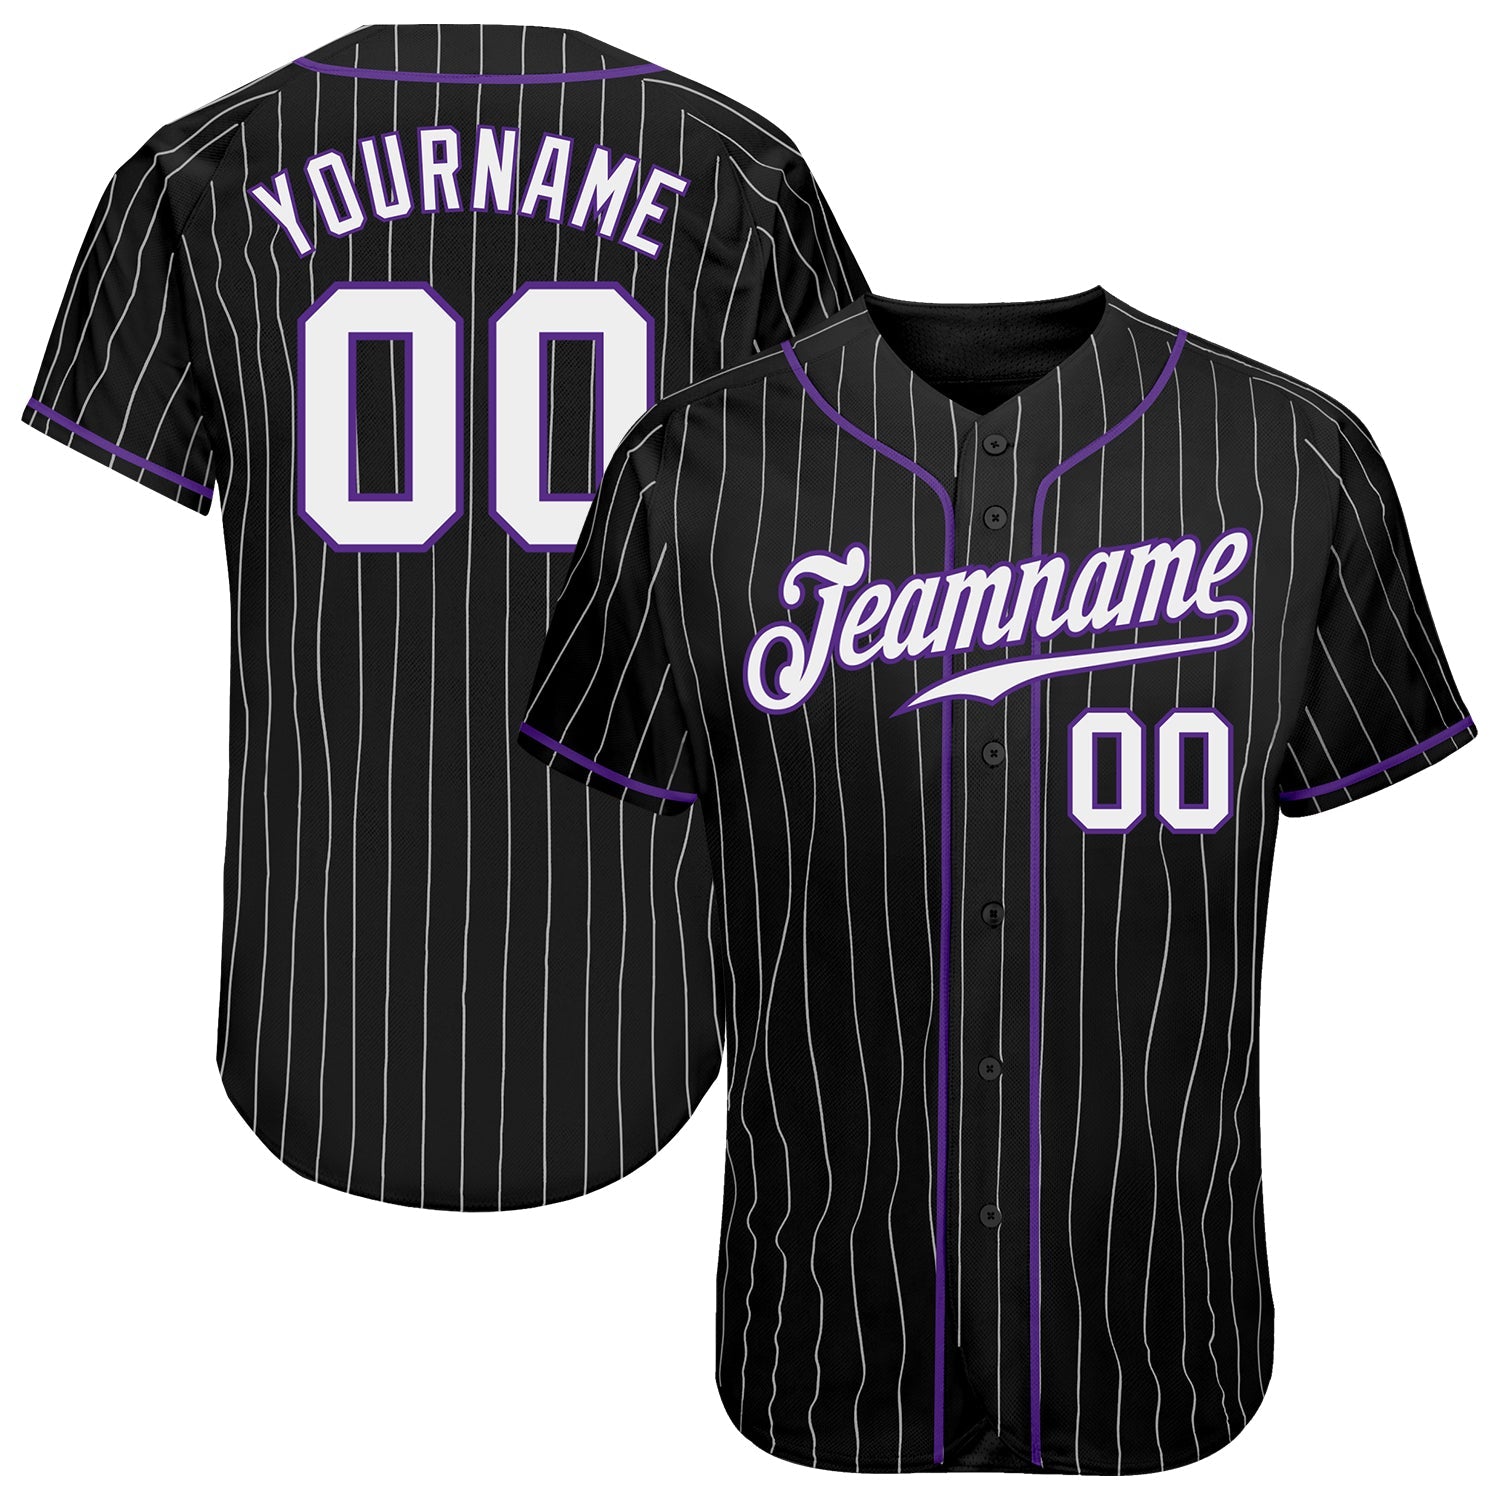 Personnalisé Noir Blanc Rayure Blanc-Violet Authentique Baseball Jersey